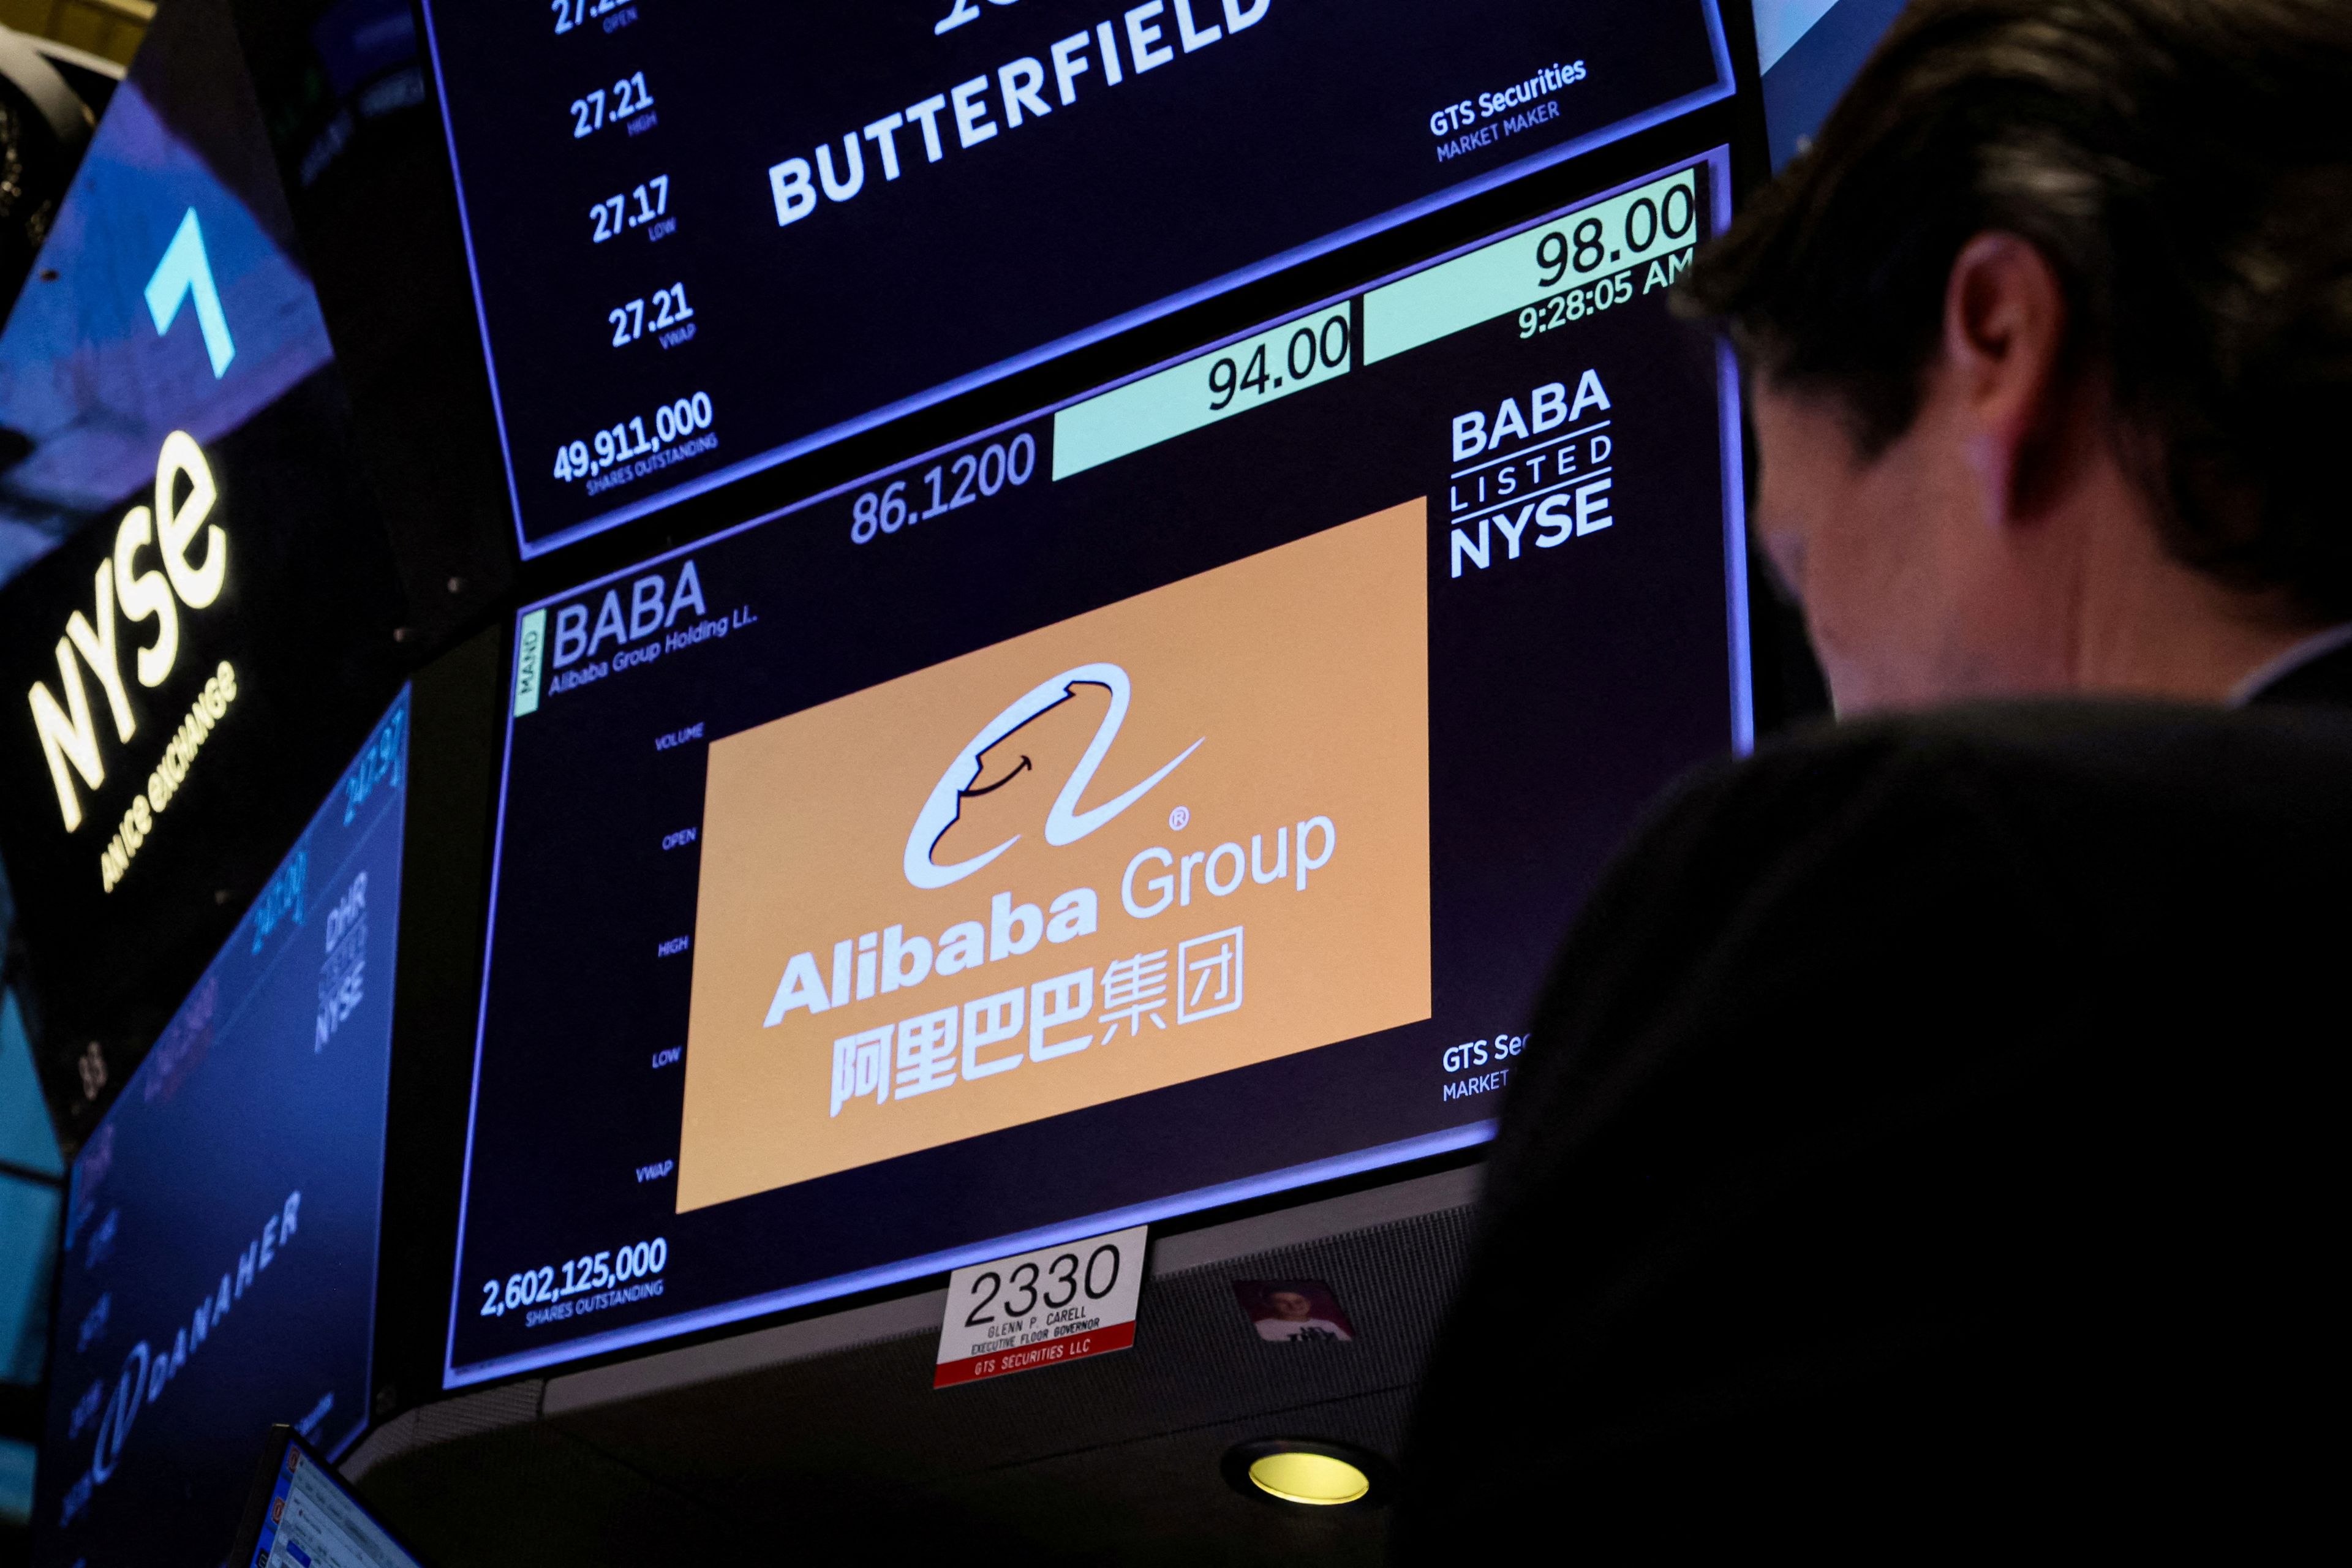 La división de 'cloud computing' de Alibaba se prepara para salir a bolsa.